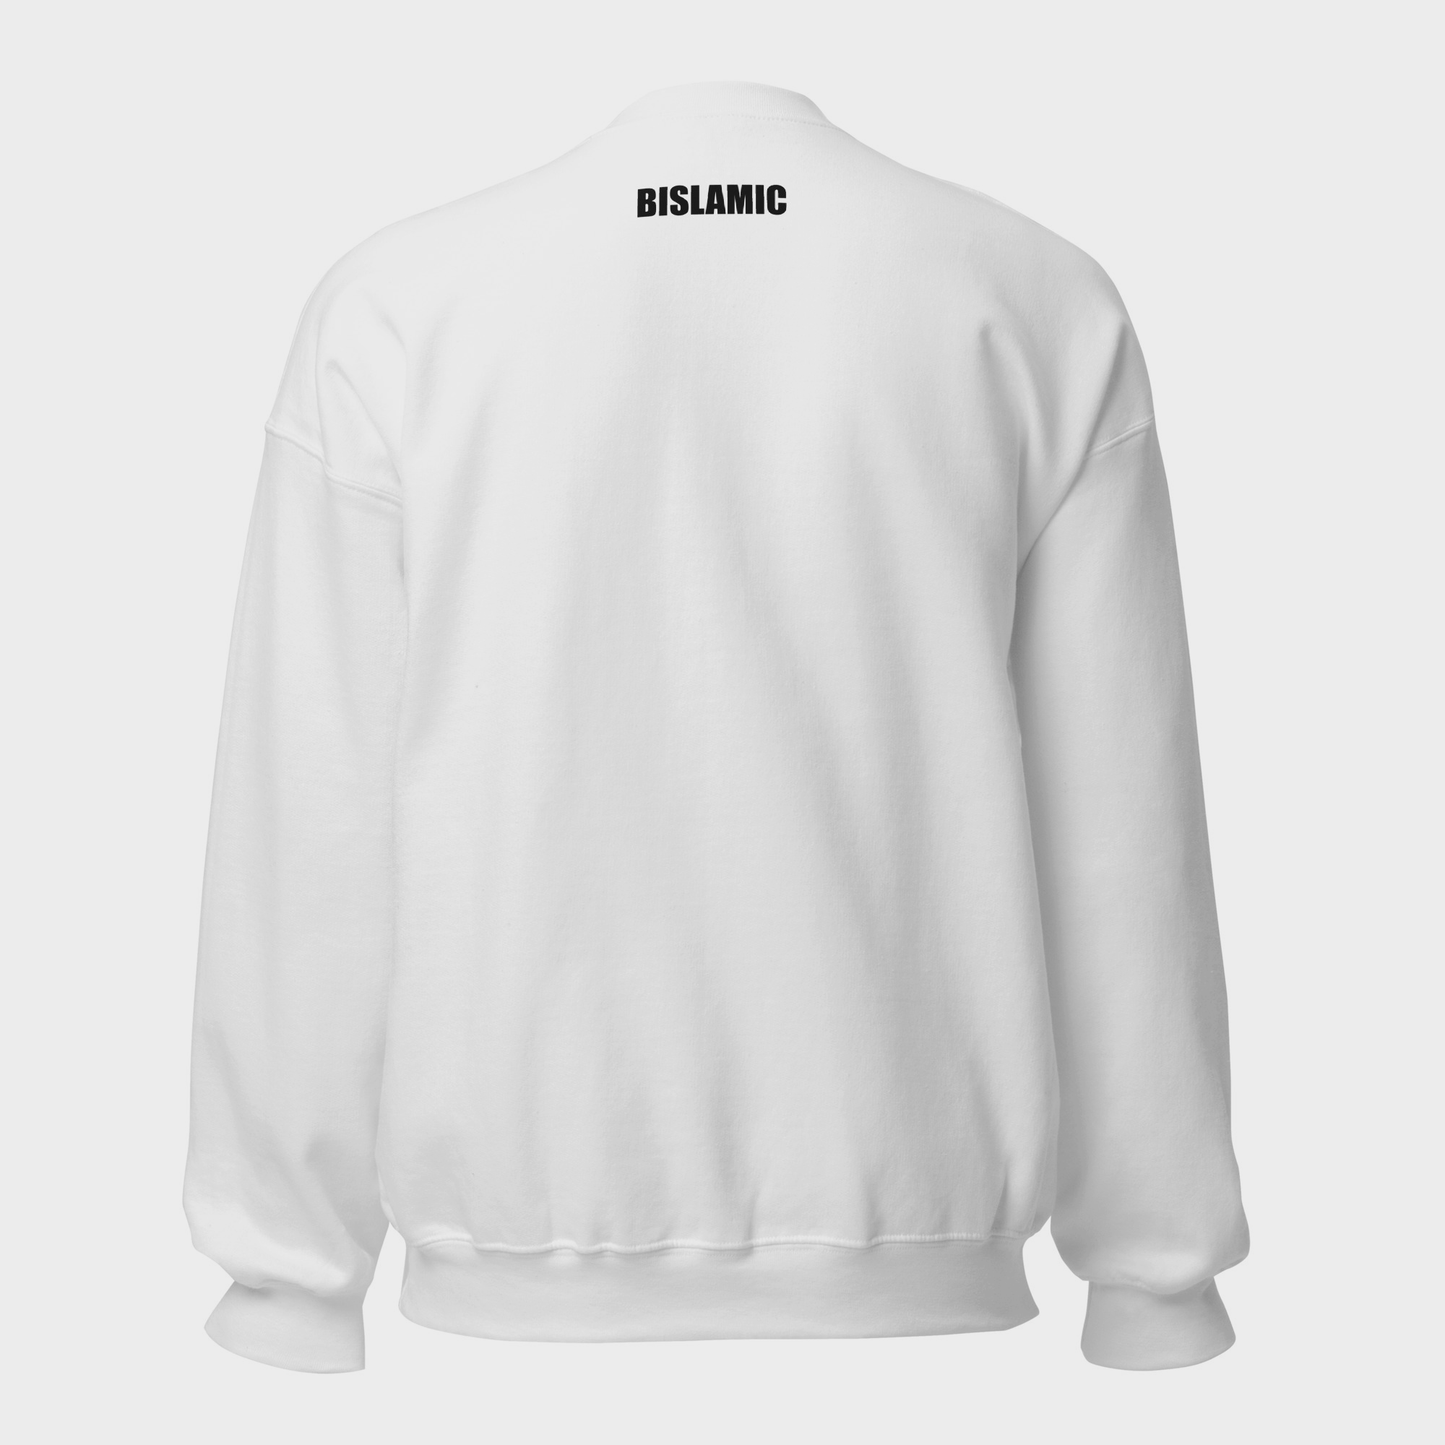 Free Palestine Classic Sweatshirt - White